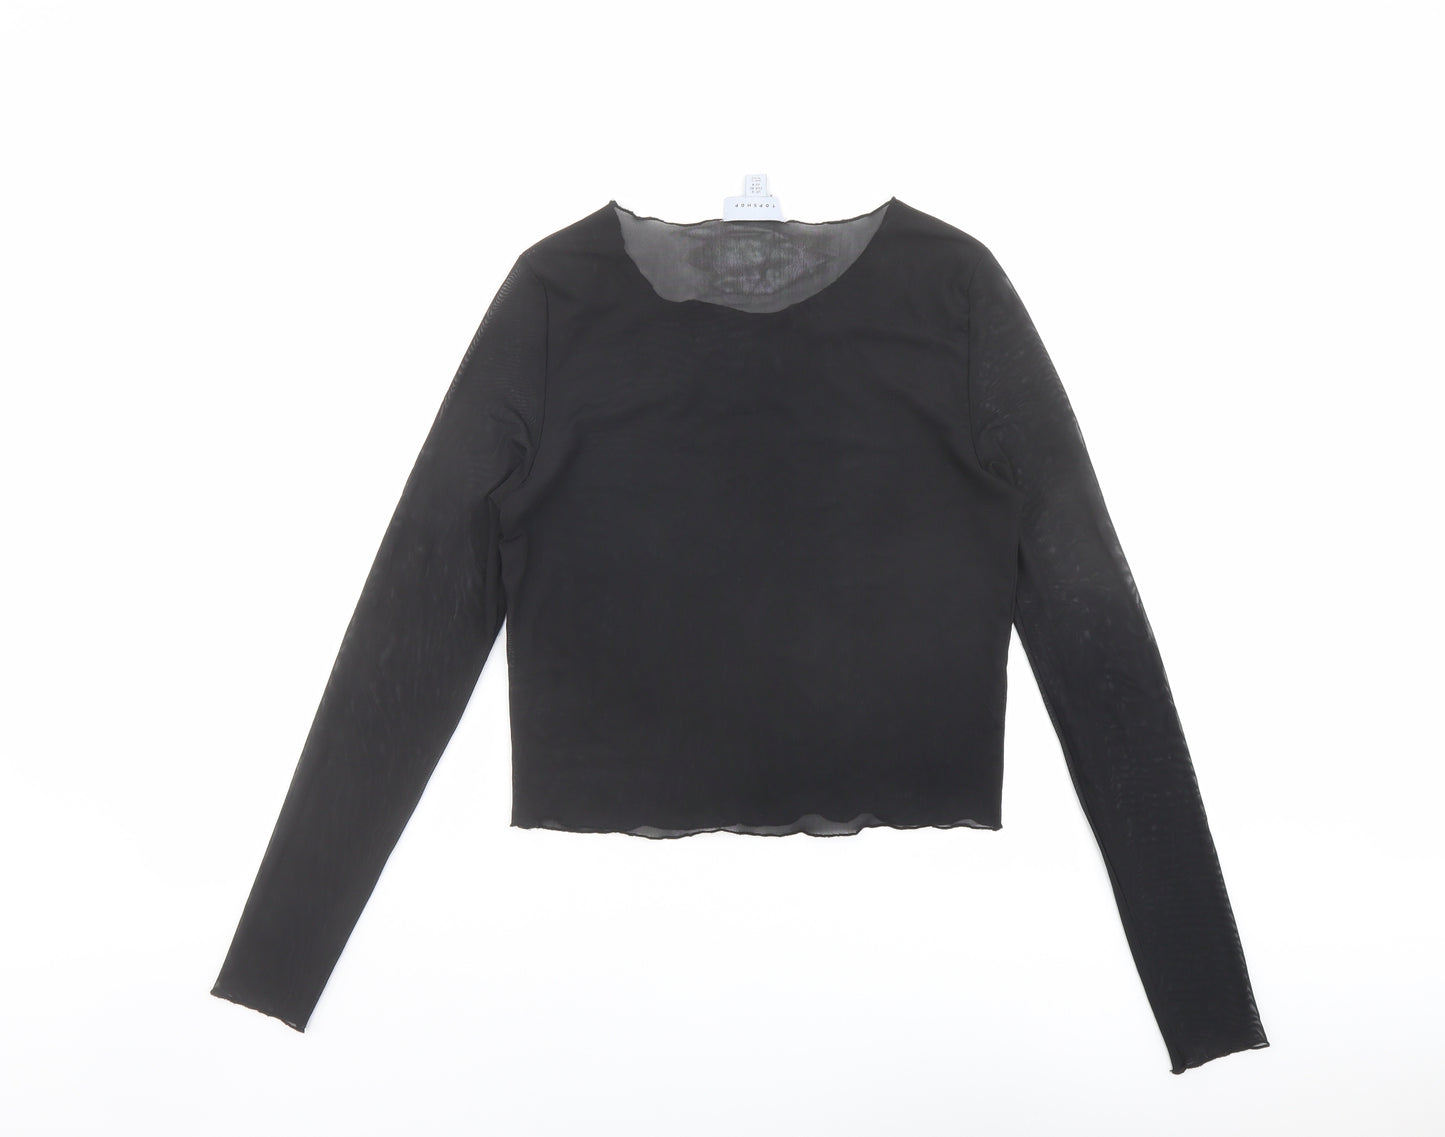 Topshop Womens Black Polyester Basic T-Shirt Size 12 Round Neck - Melrose Av.